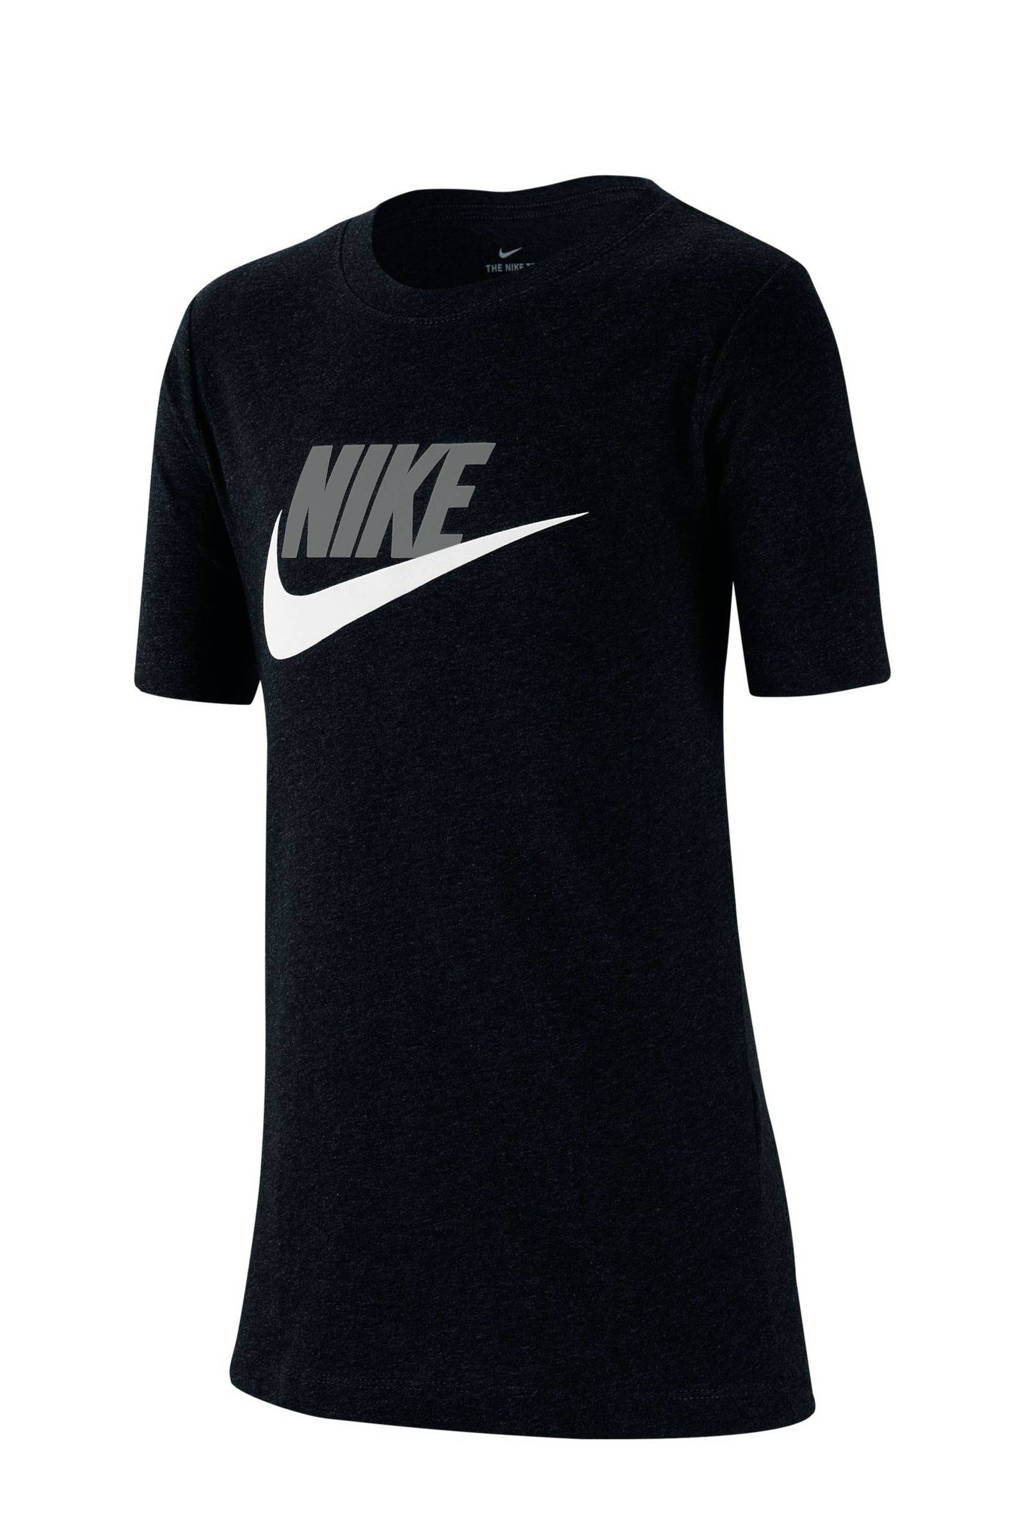 Nike T-shirt zwart/wit